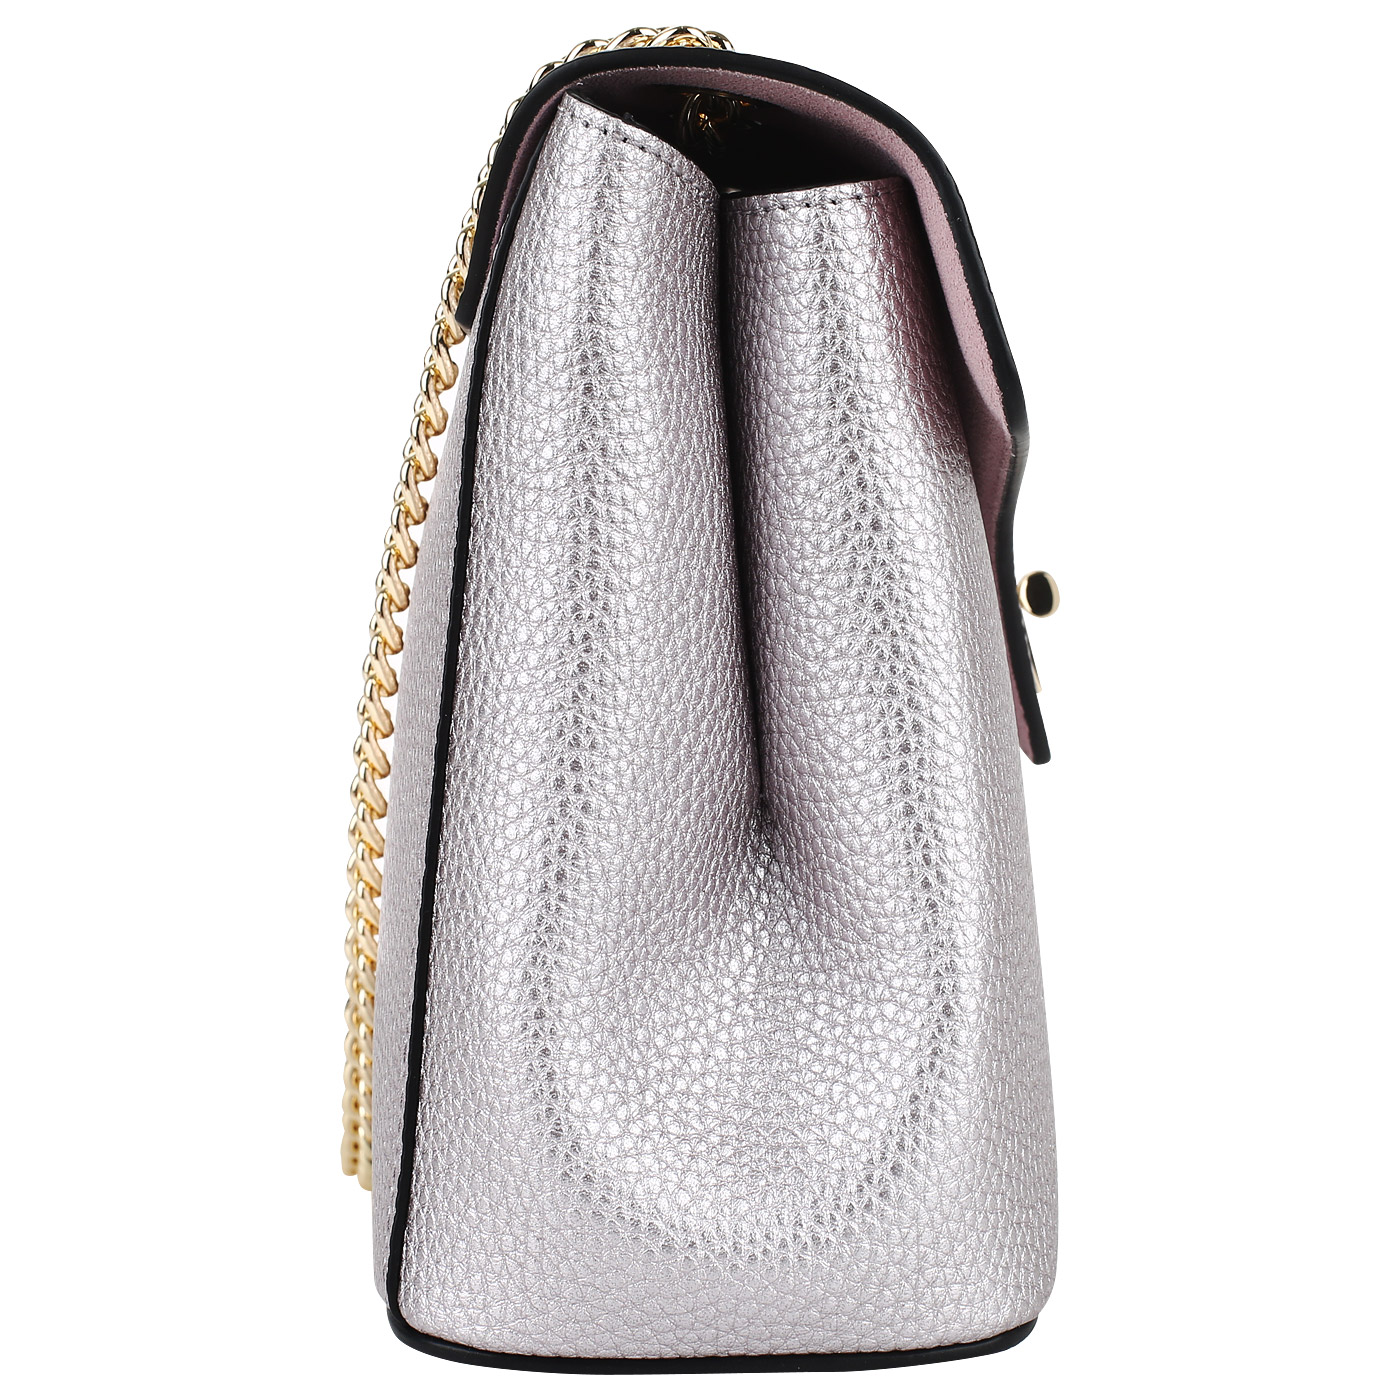 Сиреневая сумочка с откидным клапаном Cromia Mina